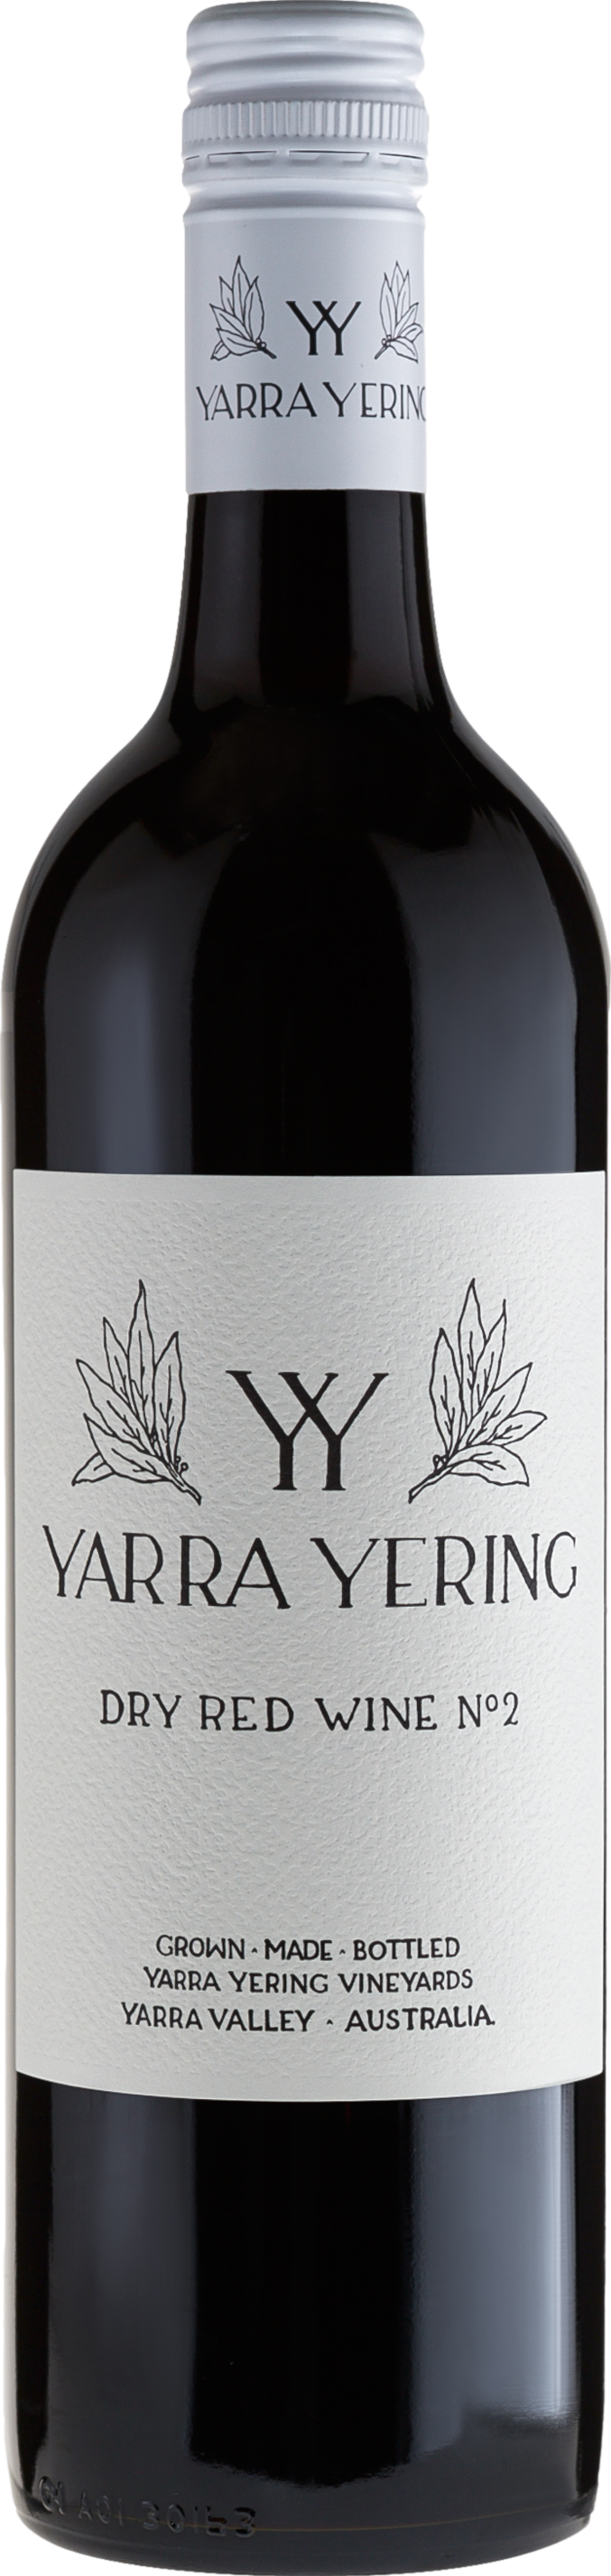 Yarra Yering Dry Red No 2 2016 Yarra Yering 8wines DACH